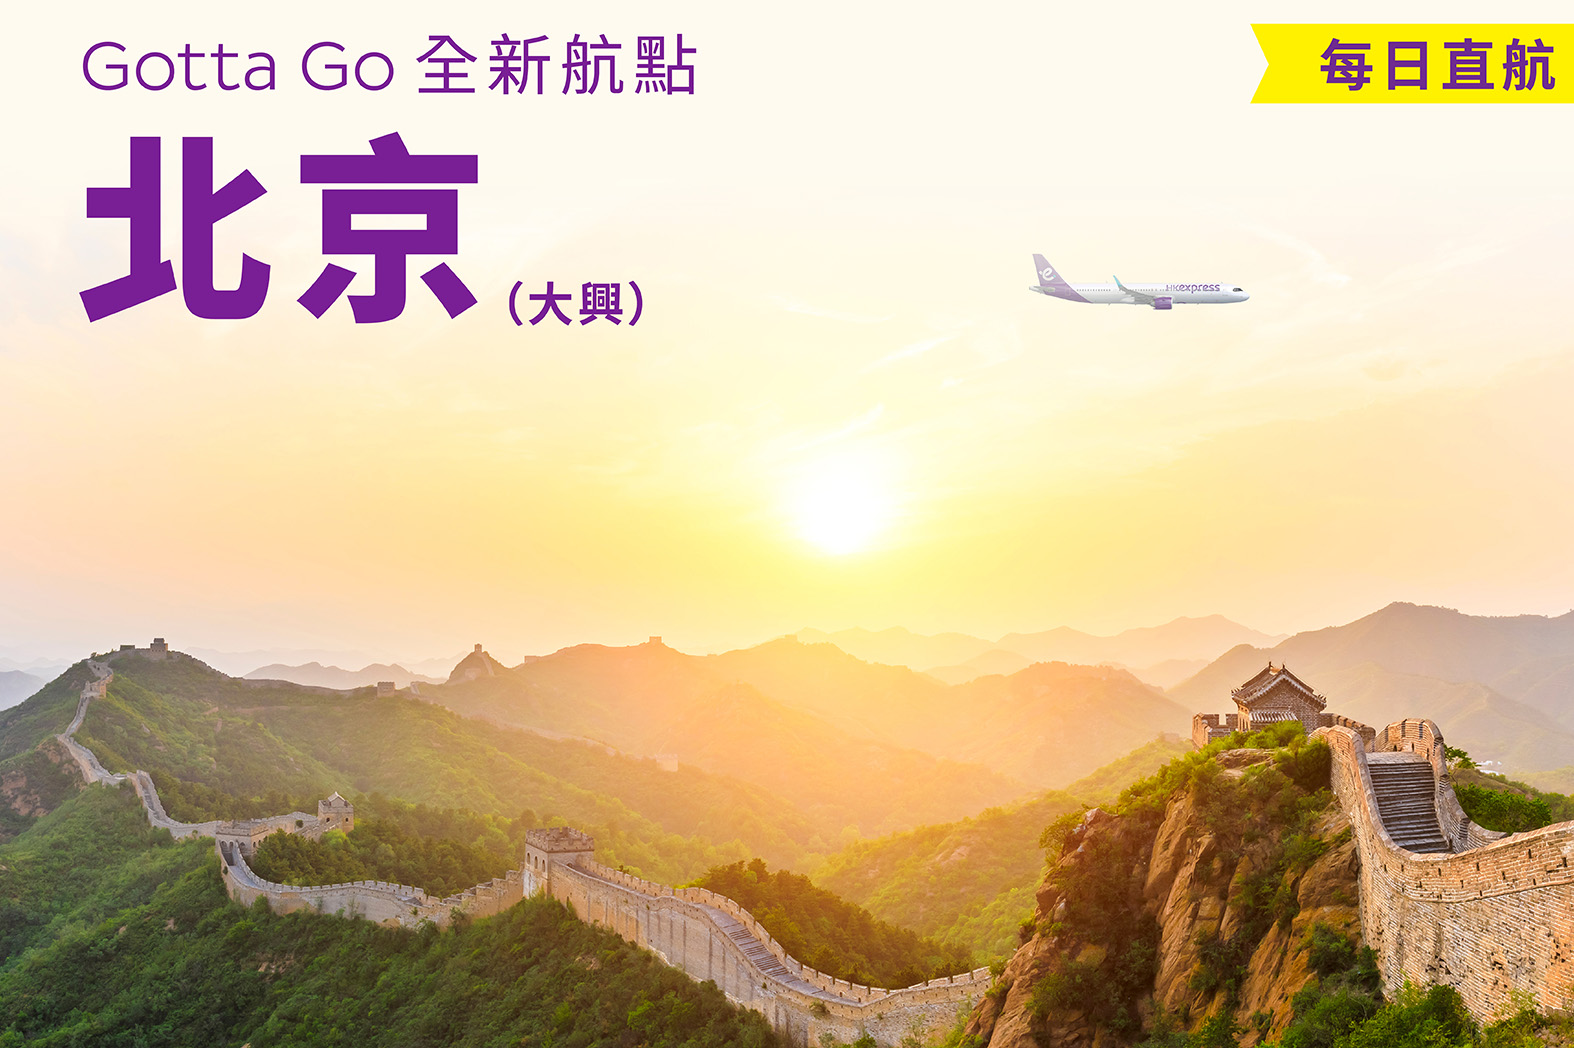 香港快運將於3月12日開通北京大興航線